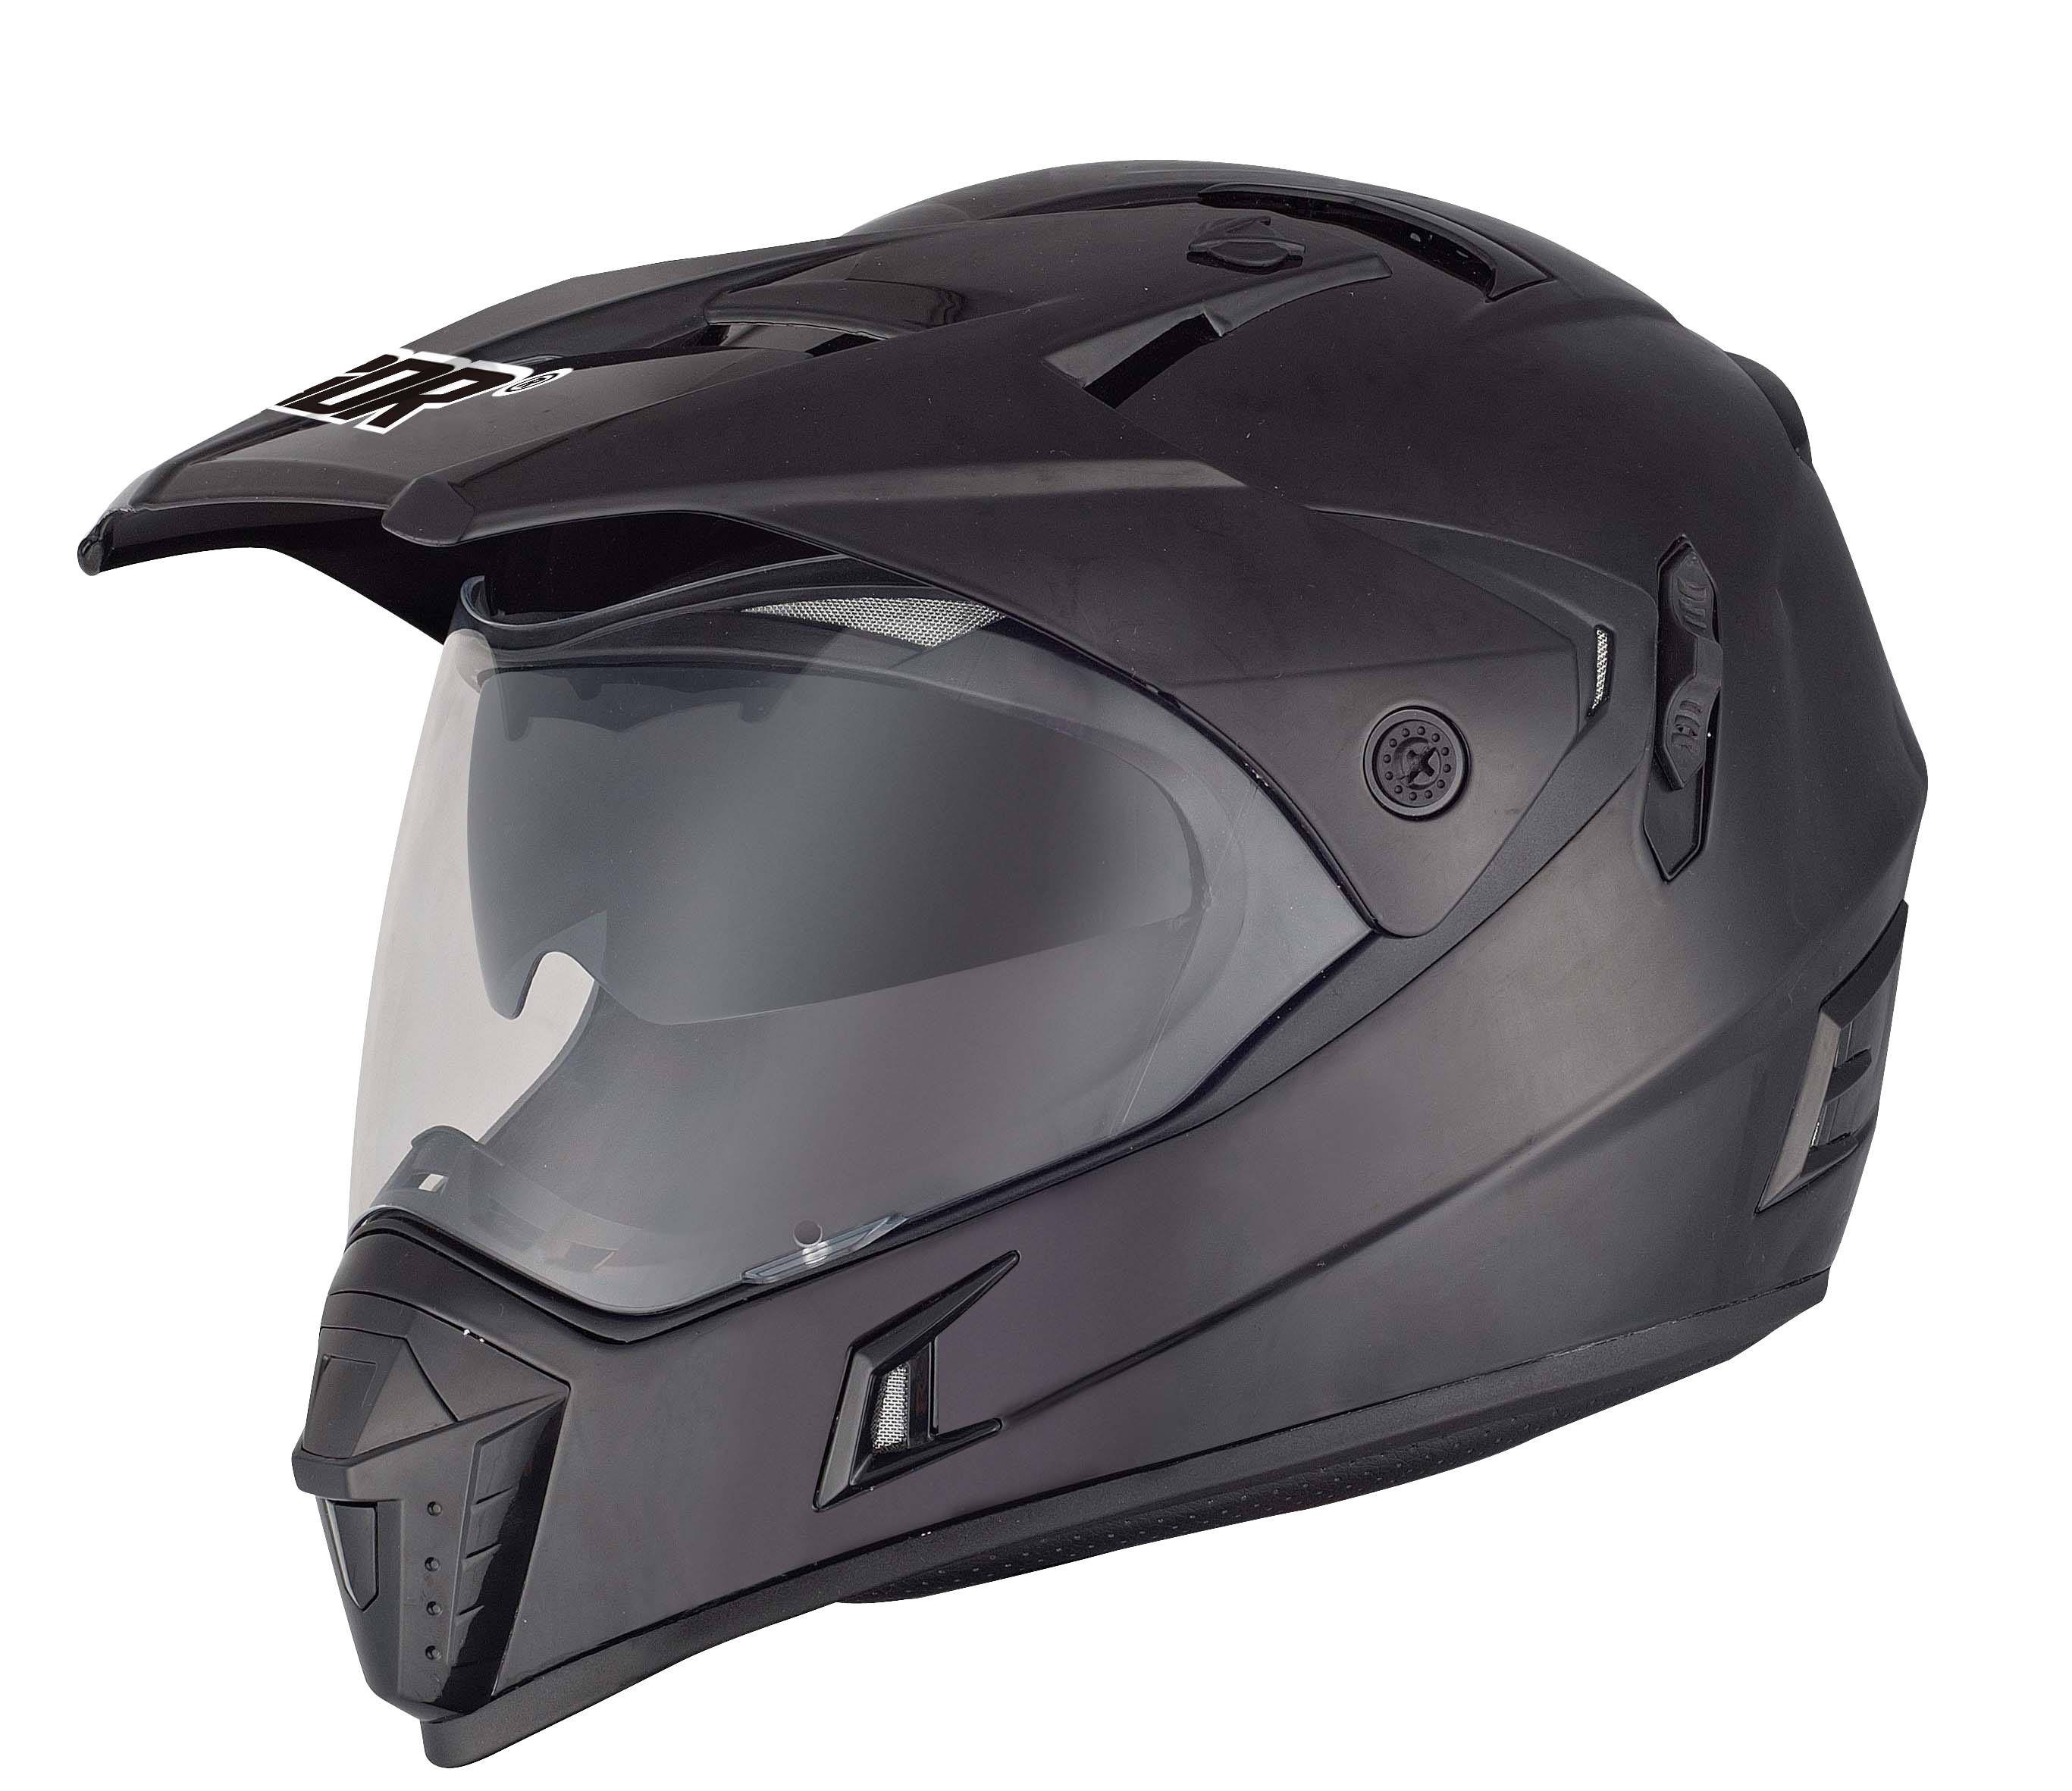 防護頭盔檢測中心 摩托車頭盔檢測